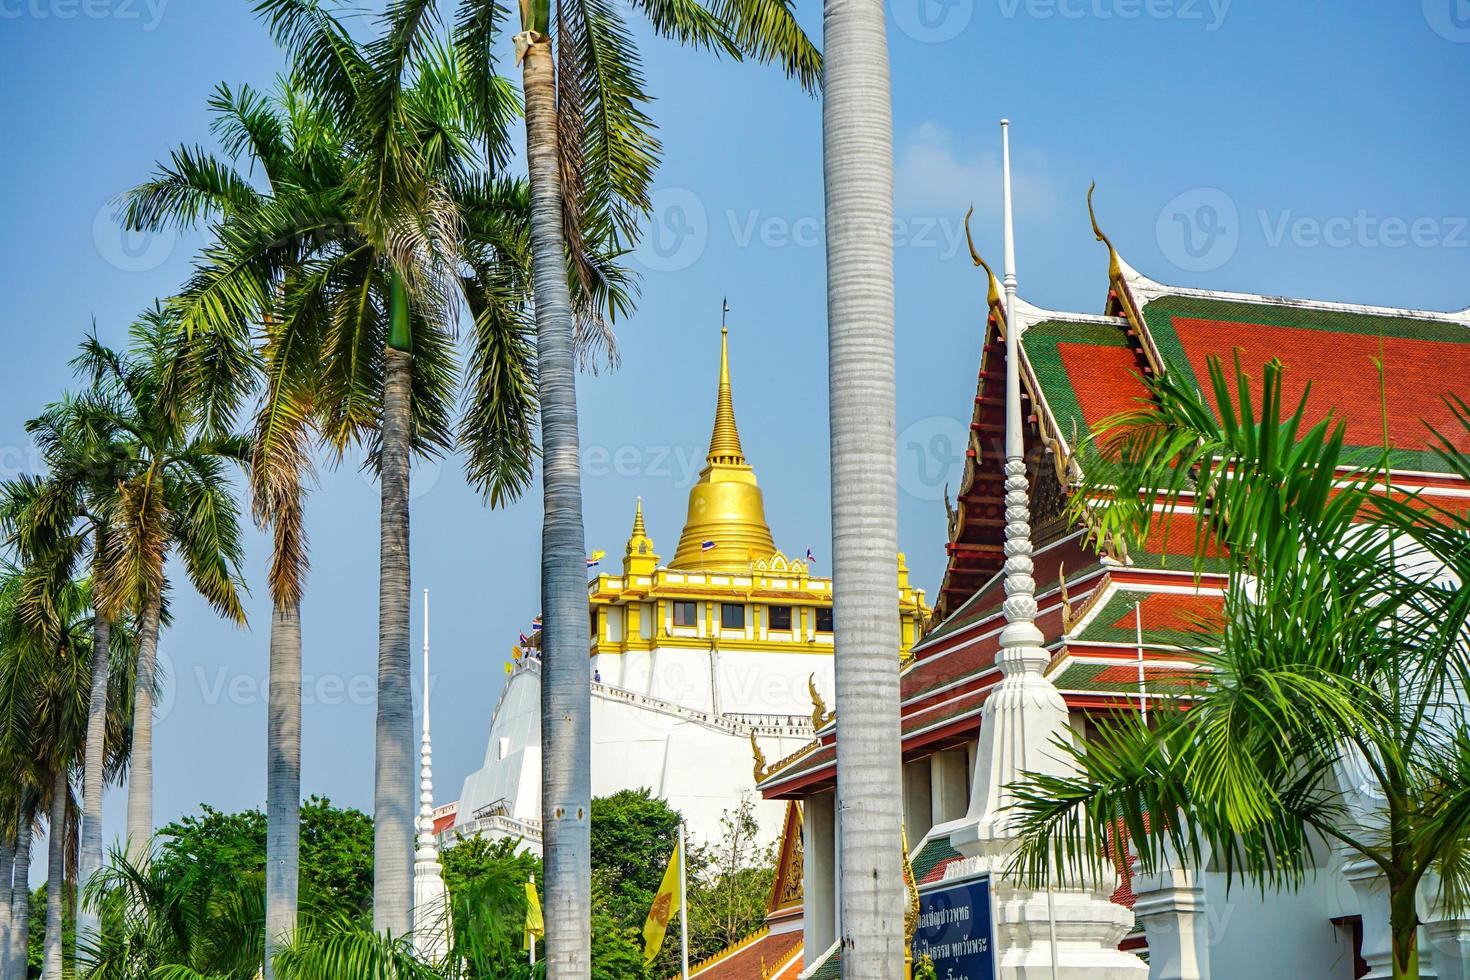 wat sakad et montagne dorée depuis la vue de l'entrée. la lettre thaïlandaise dans le panneau d'affichage est un temple bouddhiste et une autre est de rejoindre l'événement bouddhique lors de la journée du bouddha au temple bouddhiste photo